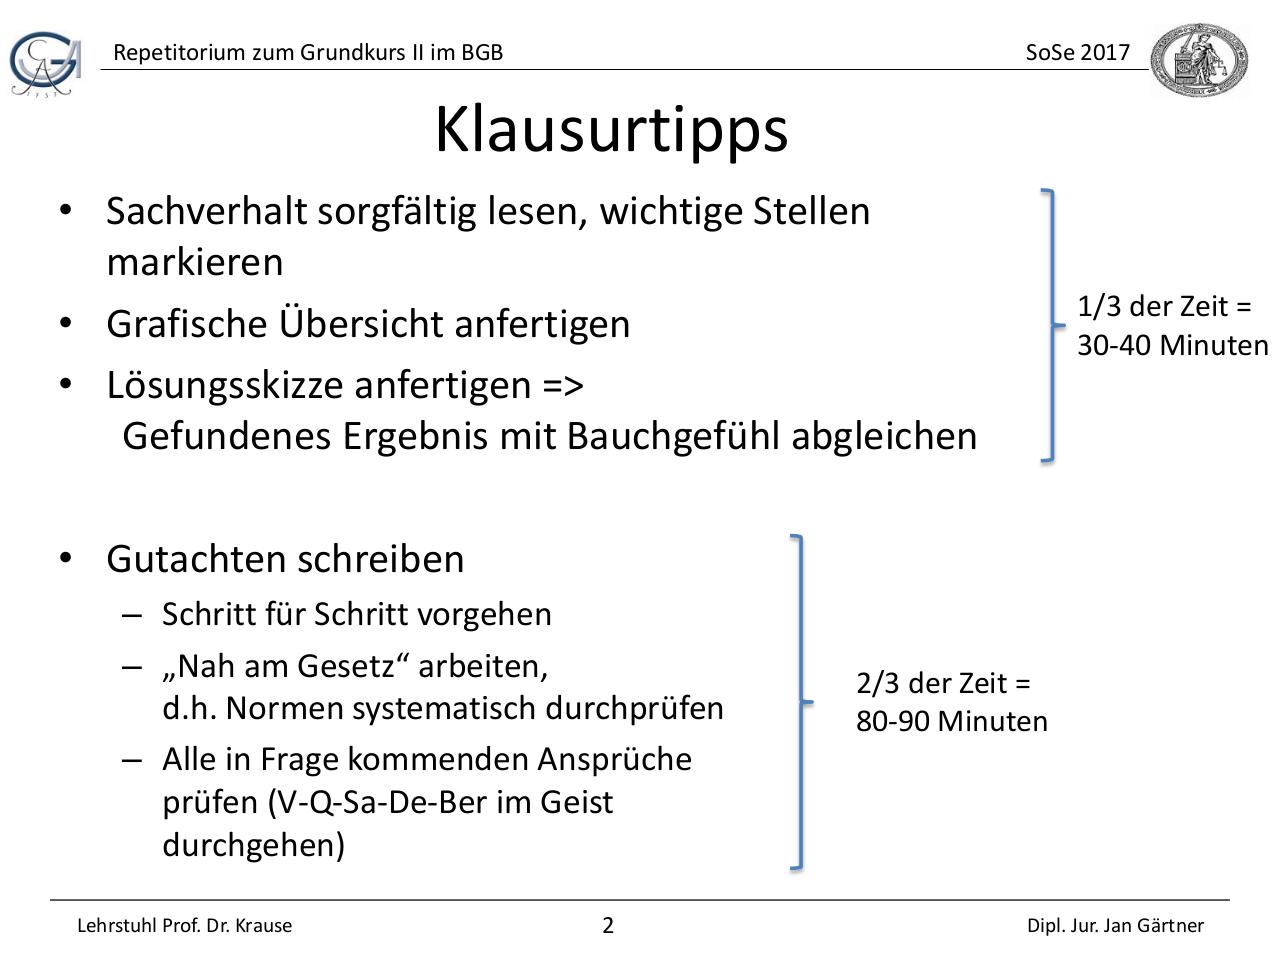 Rep zum GK II im BÃ¼rgerlichen Recht_Folien.pdf - page 2/34